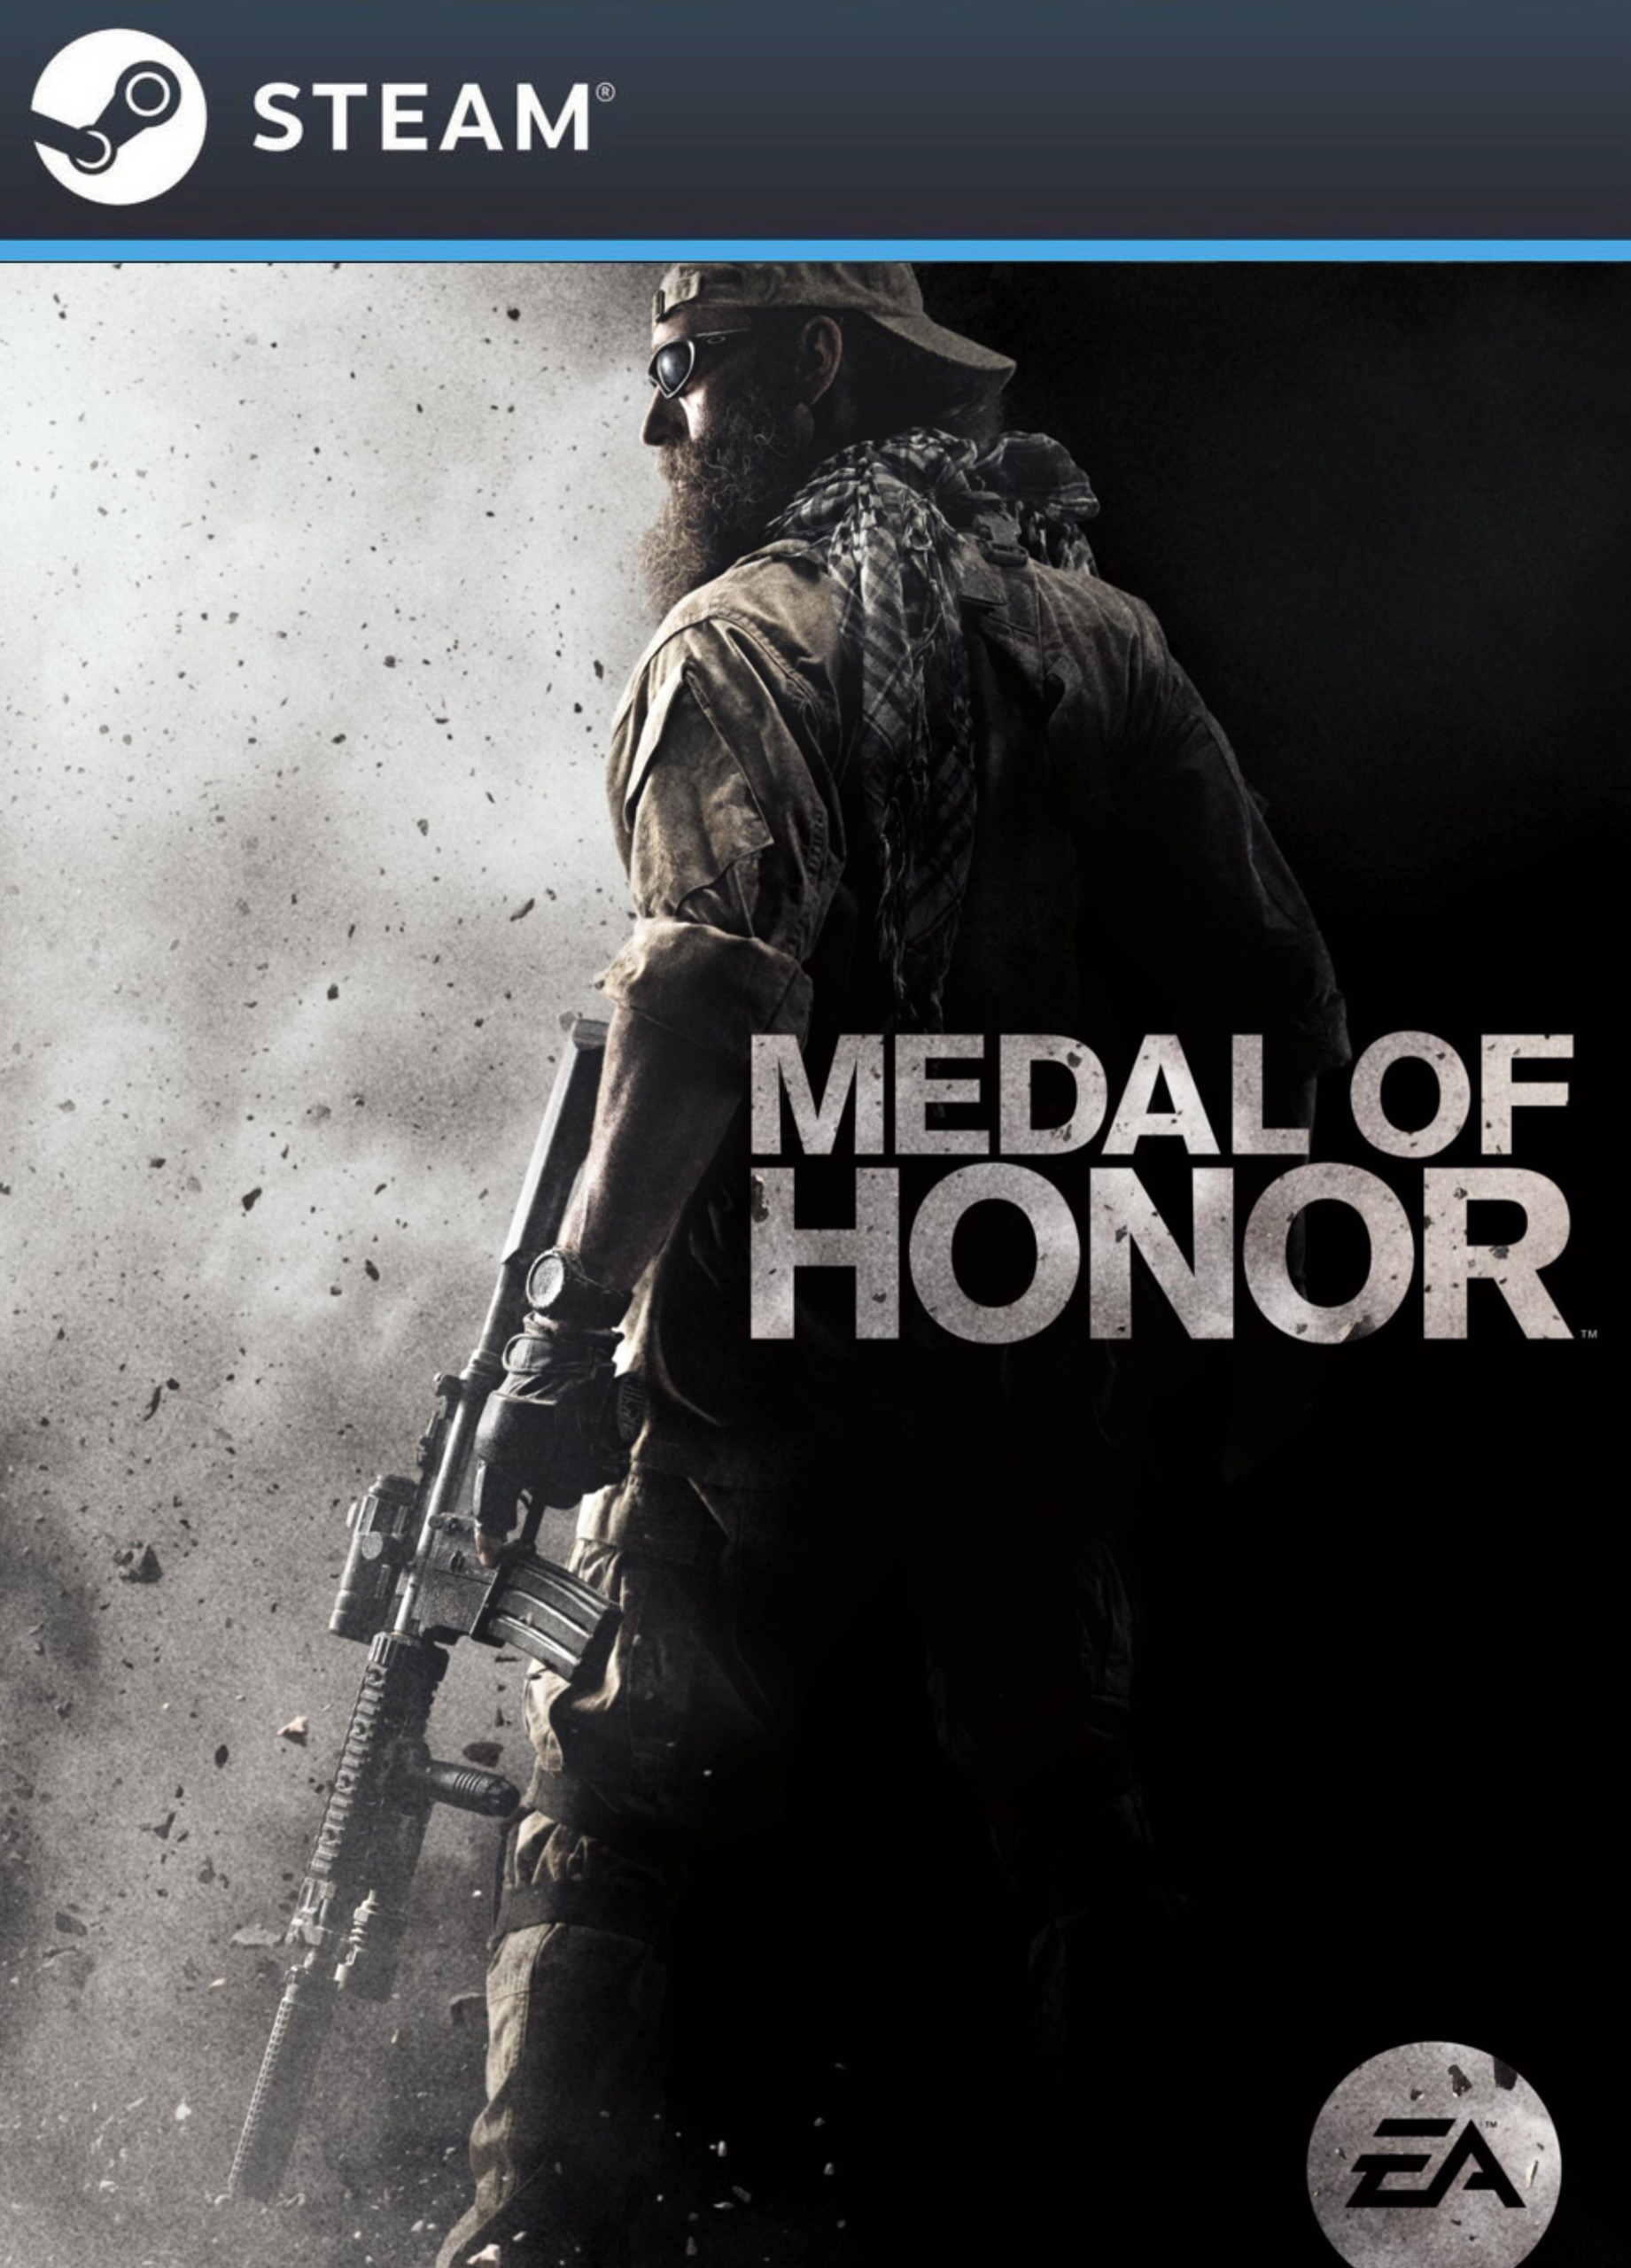 Medal of honor коды. Медаль оф хонор 2010 арт. Медаль оф хонор ps4. Medal of Honor пс3. Игра Medal of Honor Warfighter.